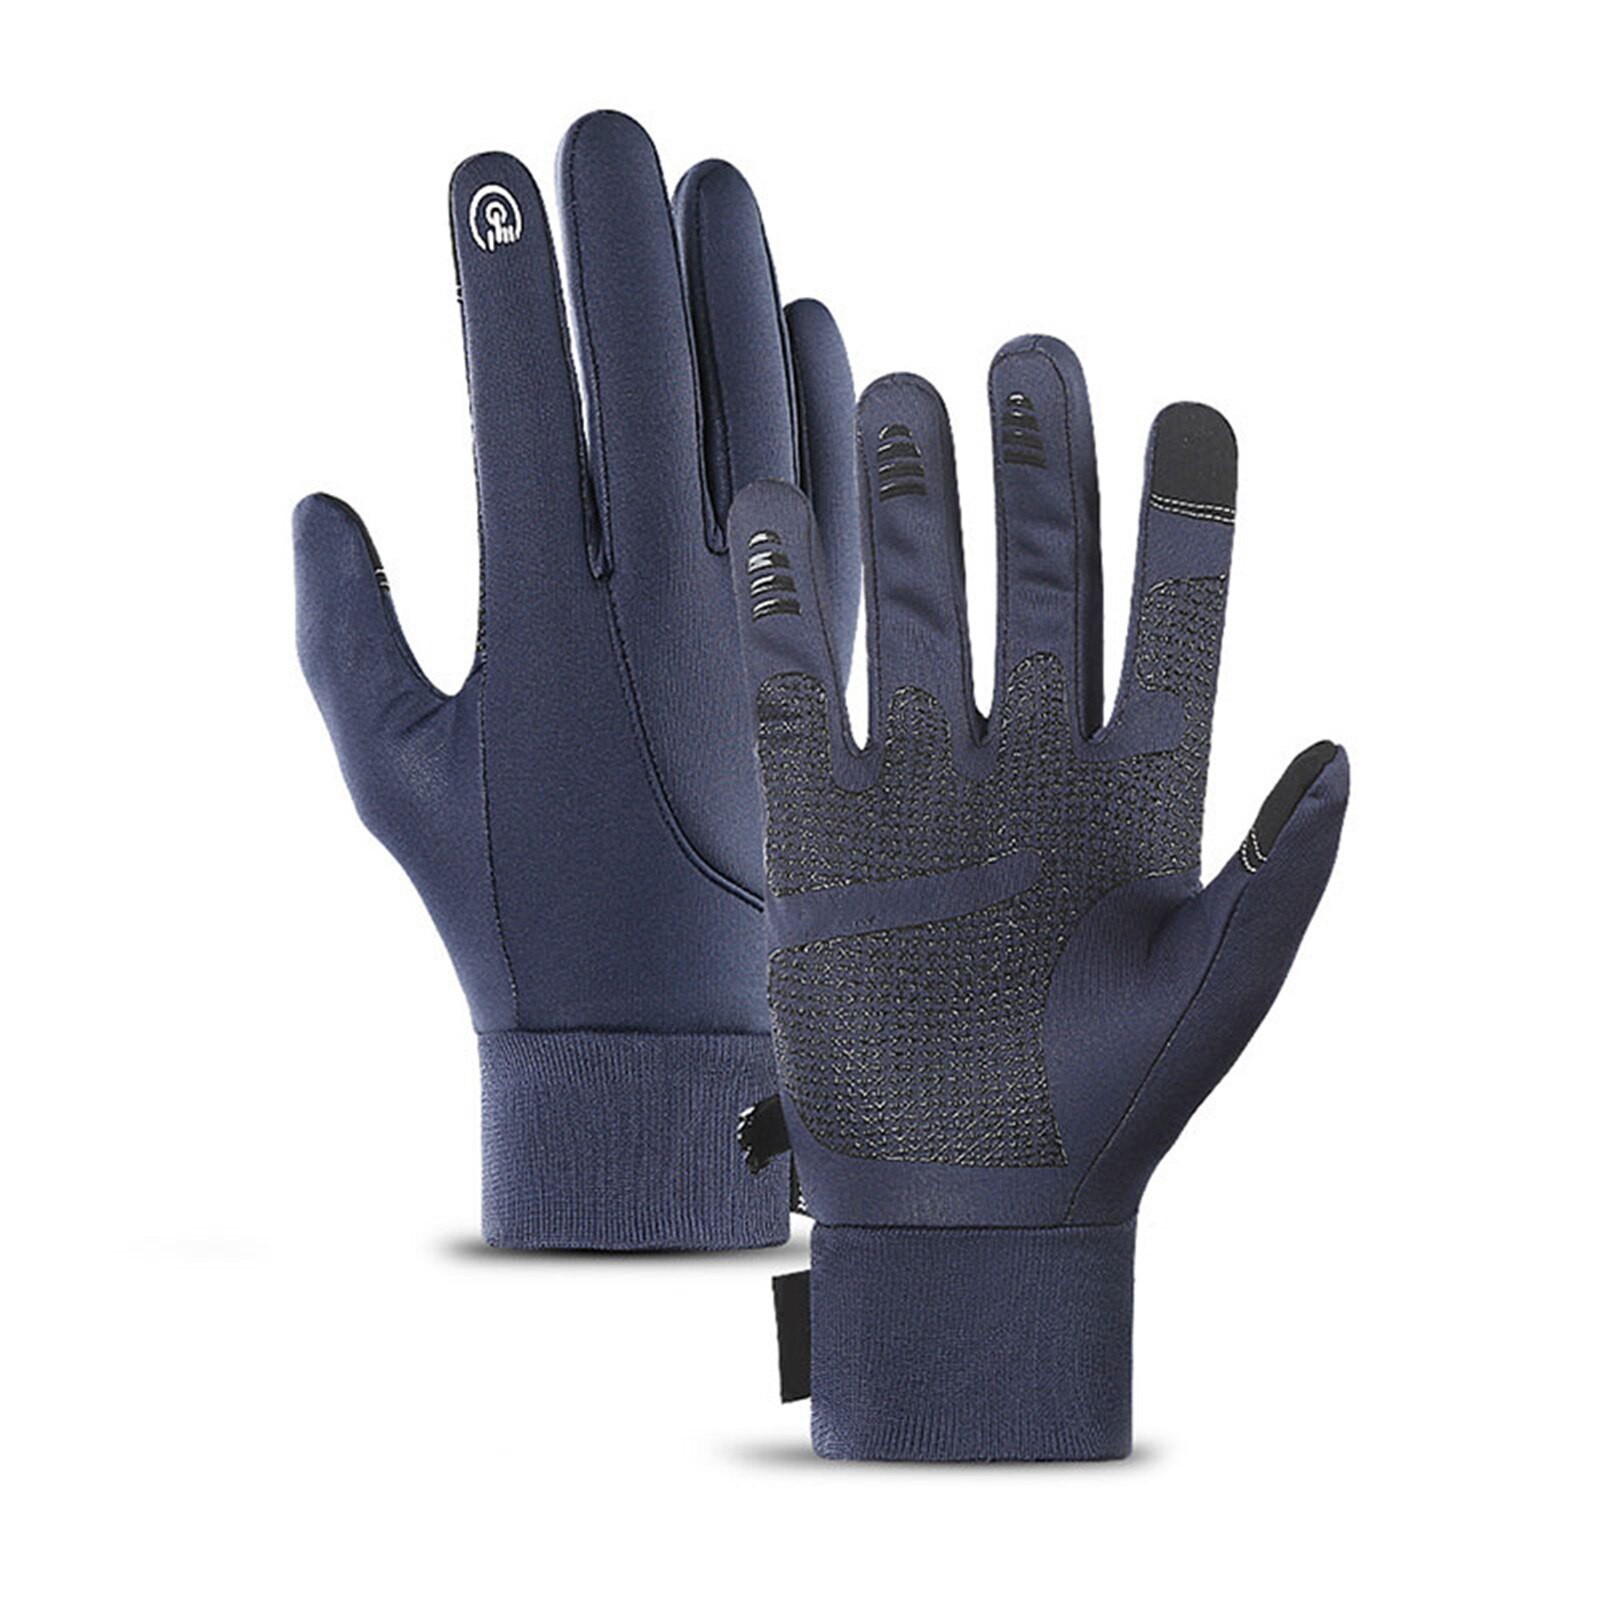 Winter Handschoenen Touchscreen Handschoenen Winddicht Anti Slip Warme Handschoenen Voor Fietsen Hardlopen Wandelen Golfen Vissen Voor Vrouwen D8